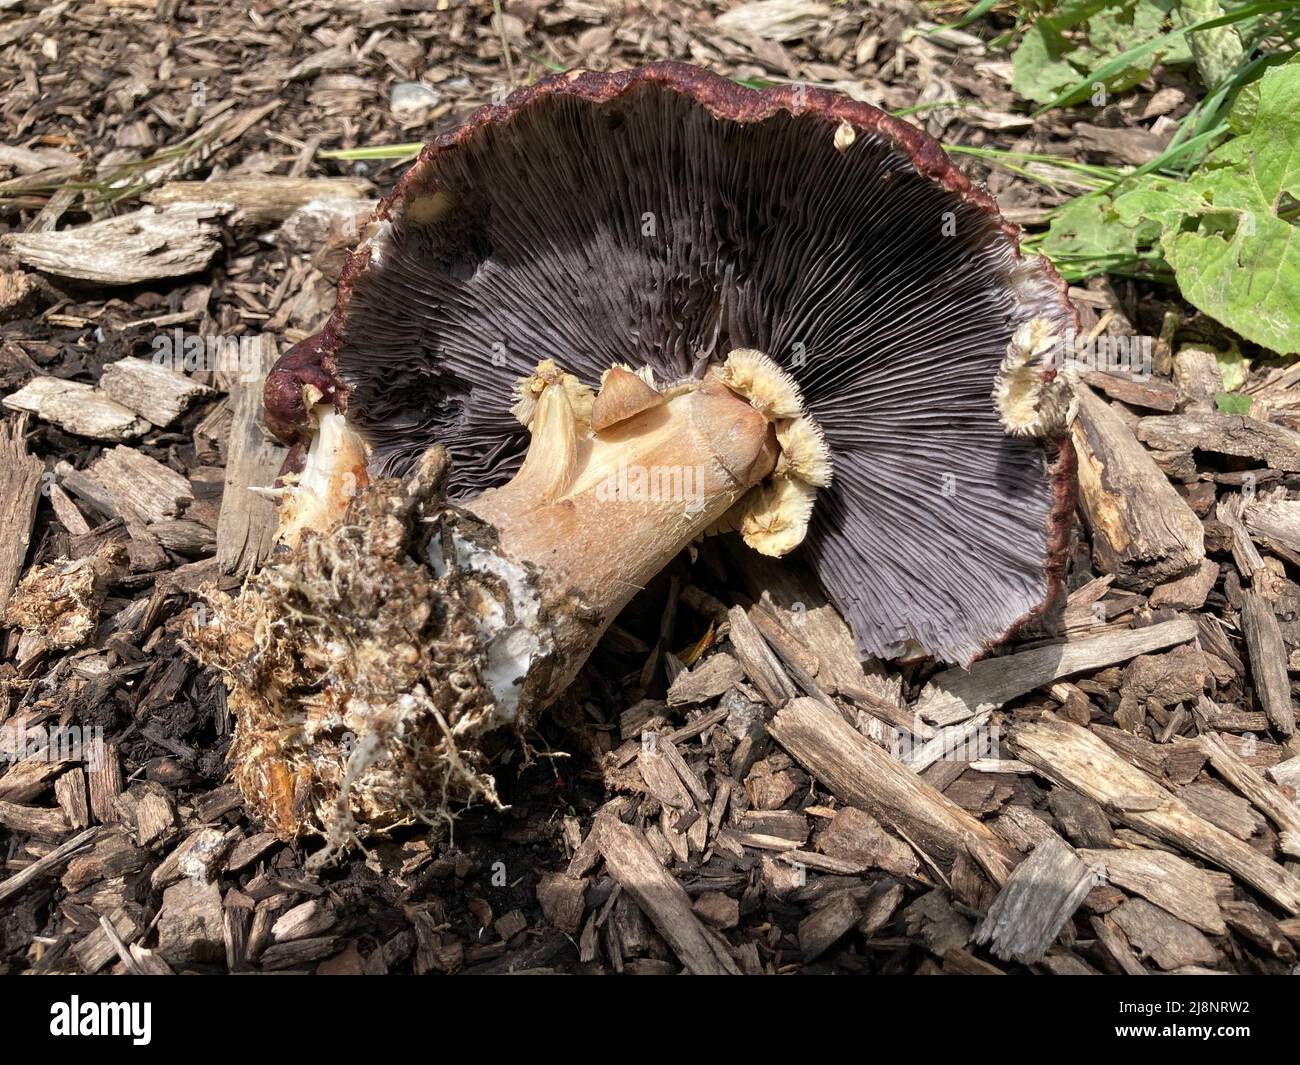 fungo di borgogna adagiato su trucioli di legno con il micelio e branchie visibili Foto Stock